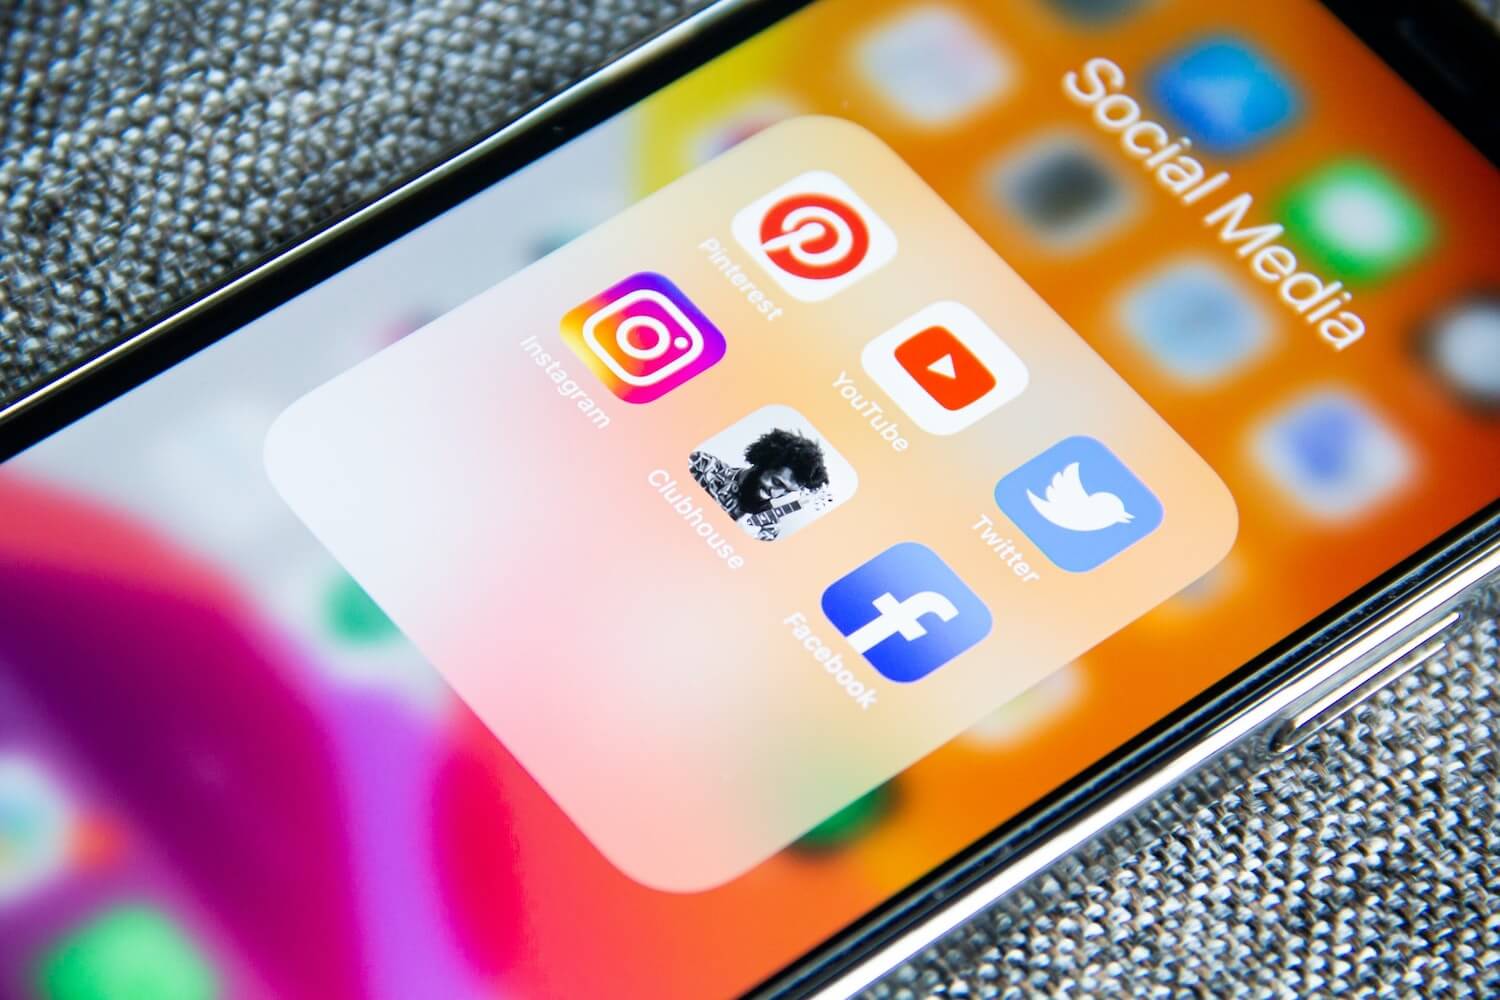 Bildschirm eines Smartphones, auf dem die Icons verschiedener Sozialer Netzwerke zu sehen sind.